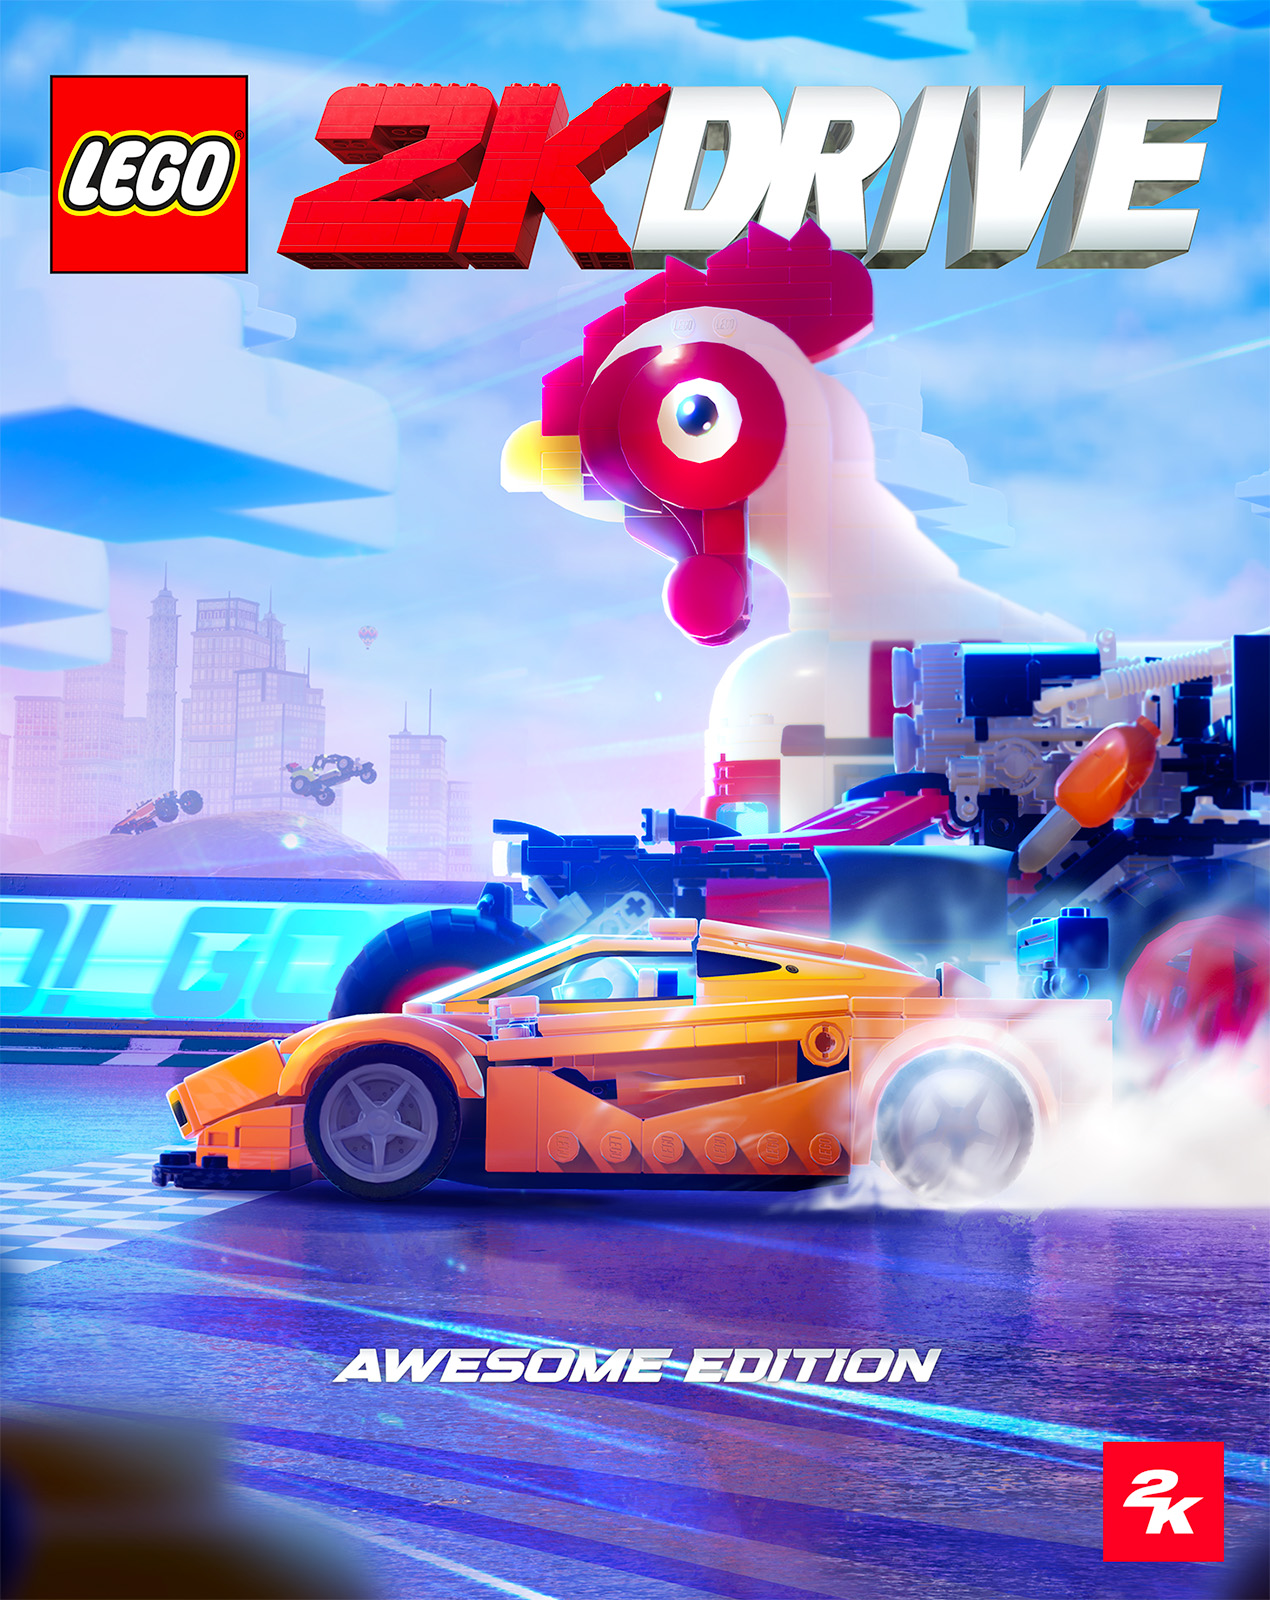 LEGO 2K Drive: naslednja video igra LEGO je napovedana za 19. maj 2023